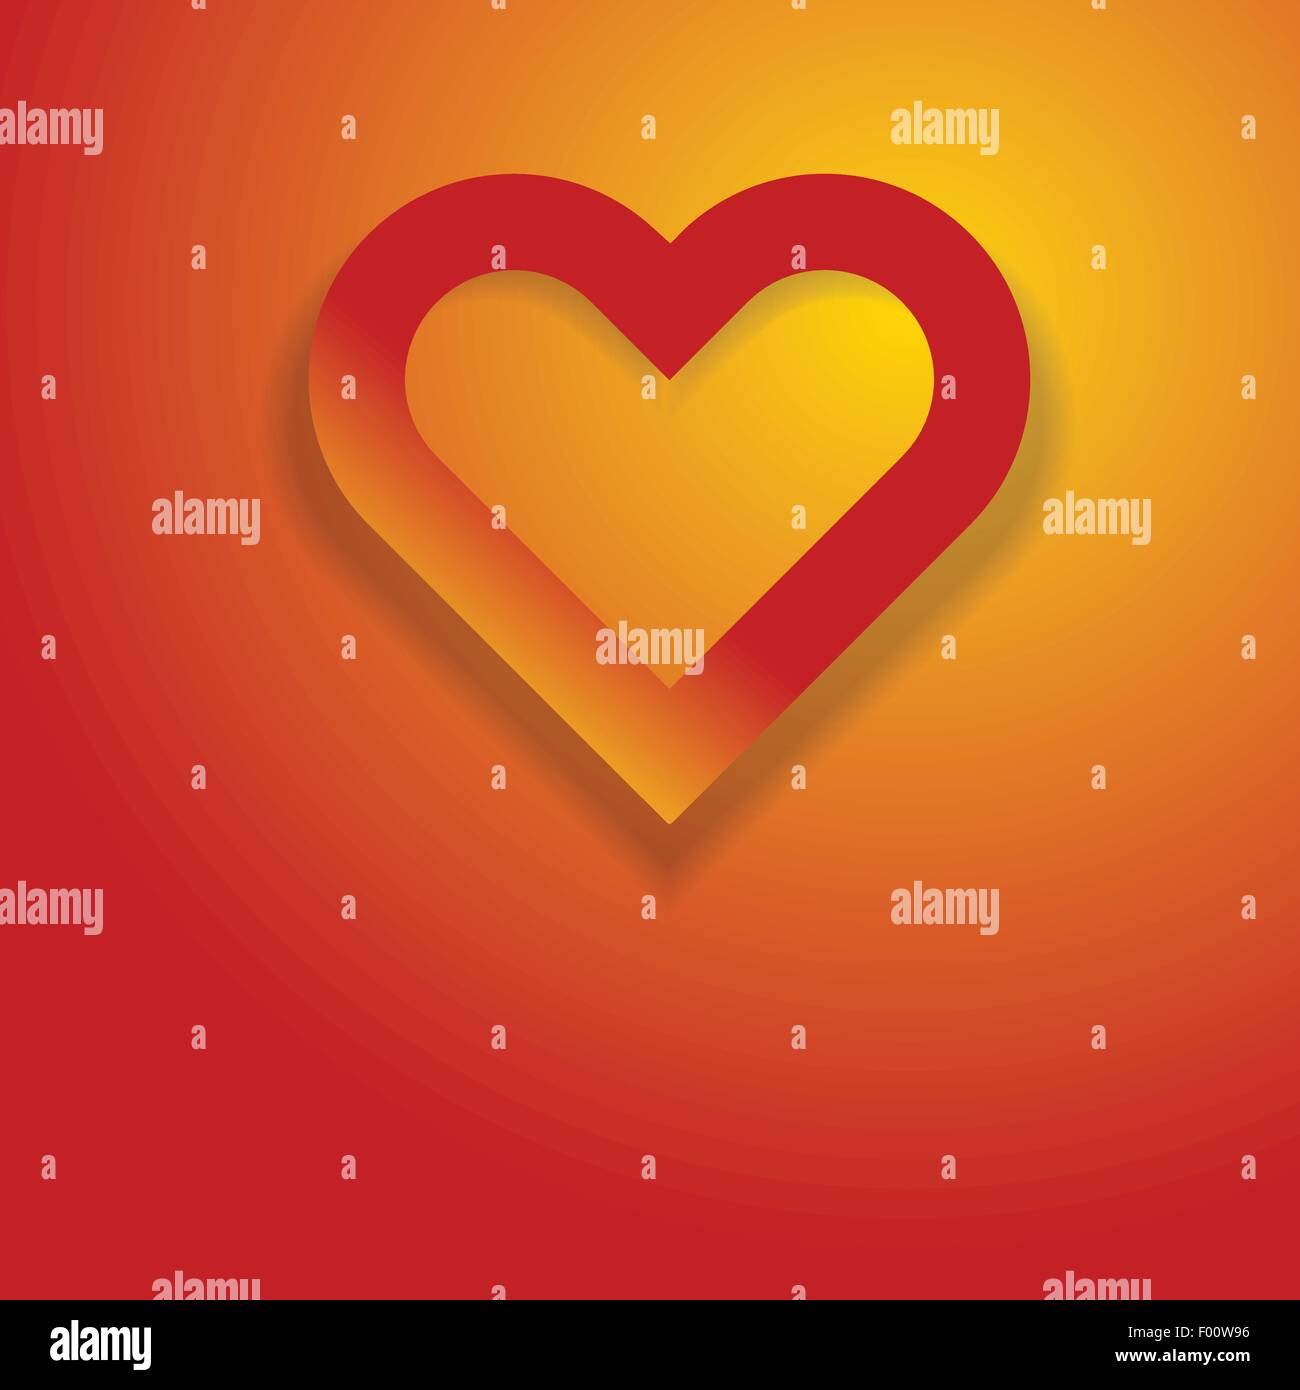 Abstrakte Herzsymbol auf orange roten Hintergrund als Liebe-Konzept-Vektor-Illustration. Stock Vektor